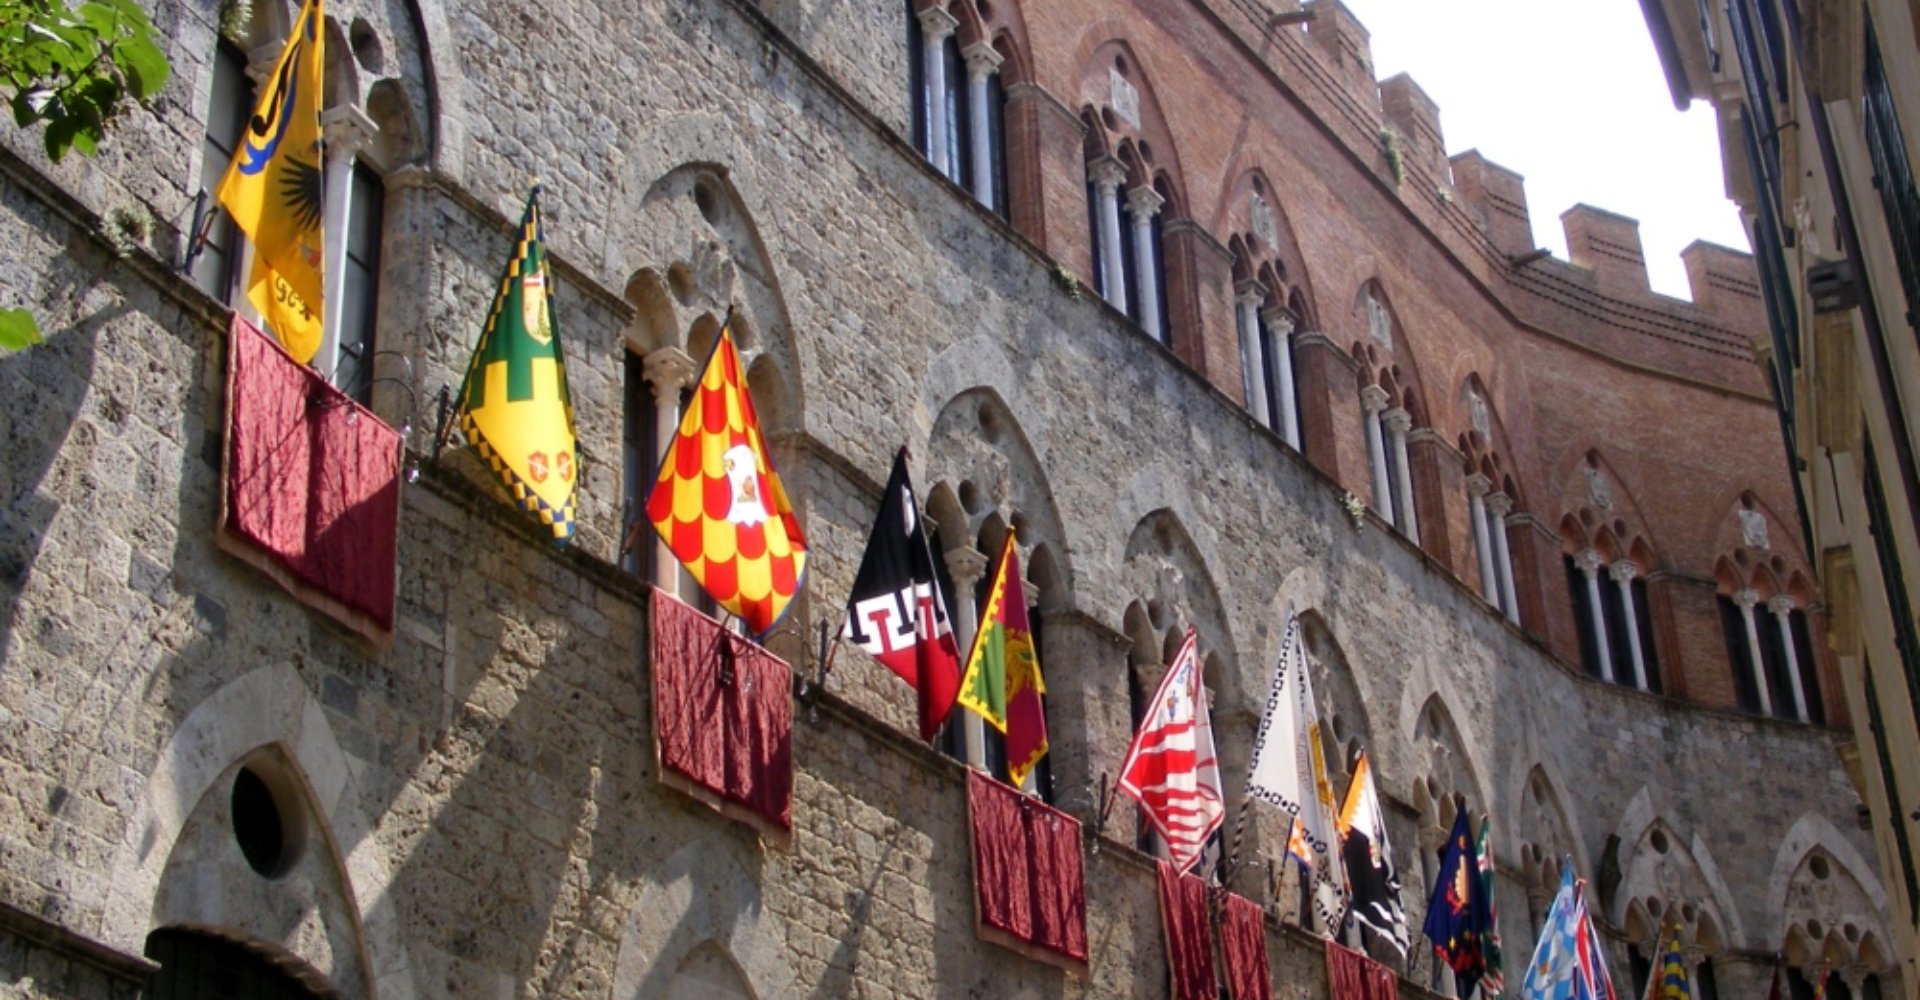 Palazzo Chigi-Saracini, Siena